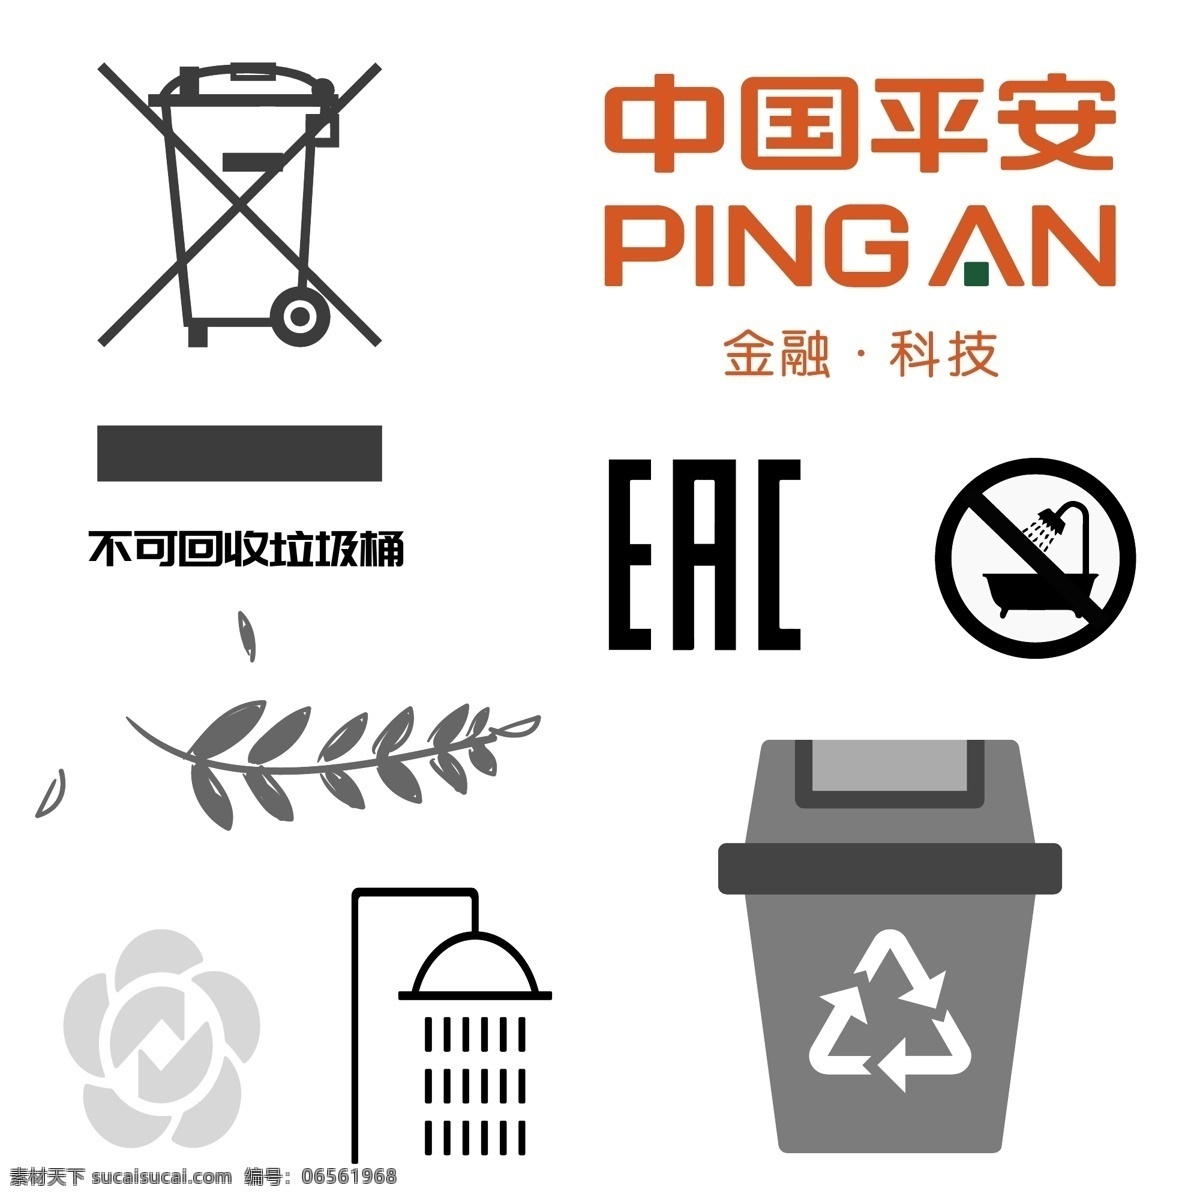 不可淋浴 不可回收 eac 中国平安 叶子 淋浴 垃圾桶 回收垃圾 矢量图 印刷标志 平安logo 矢量标志